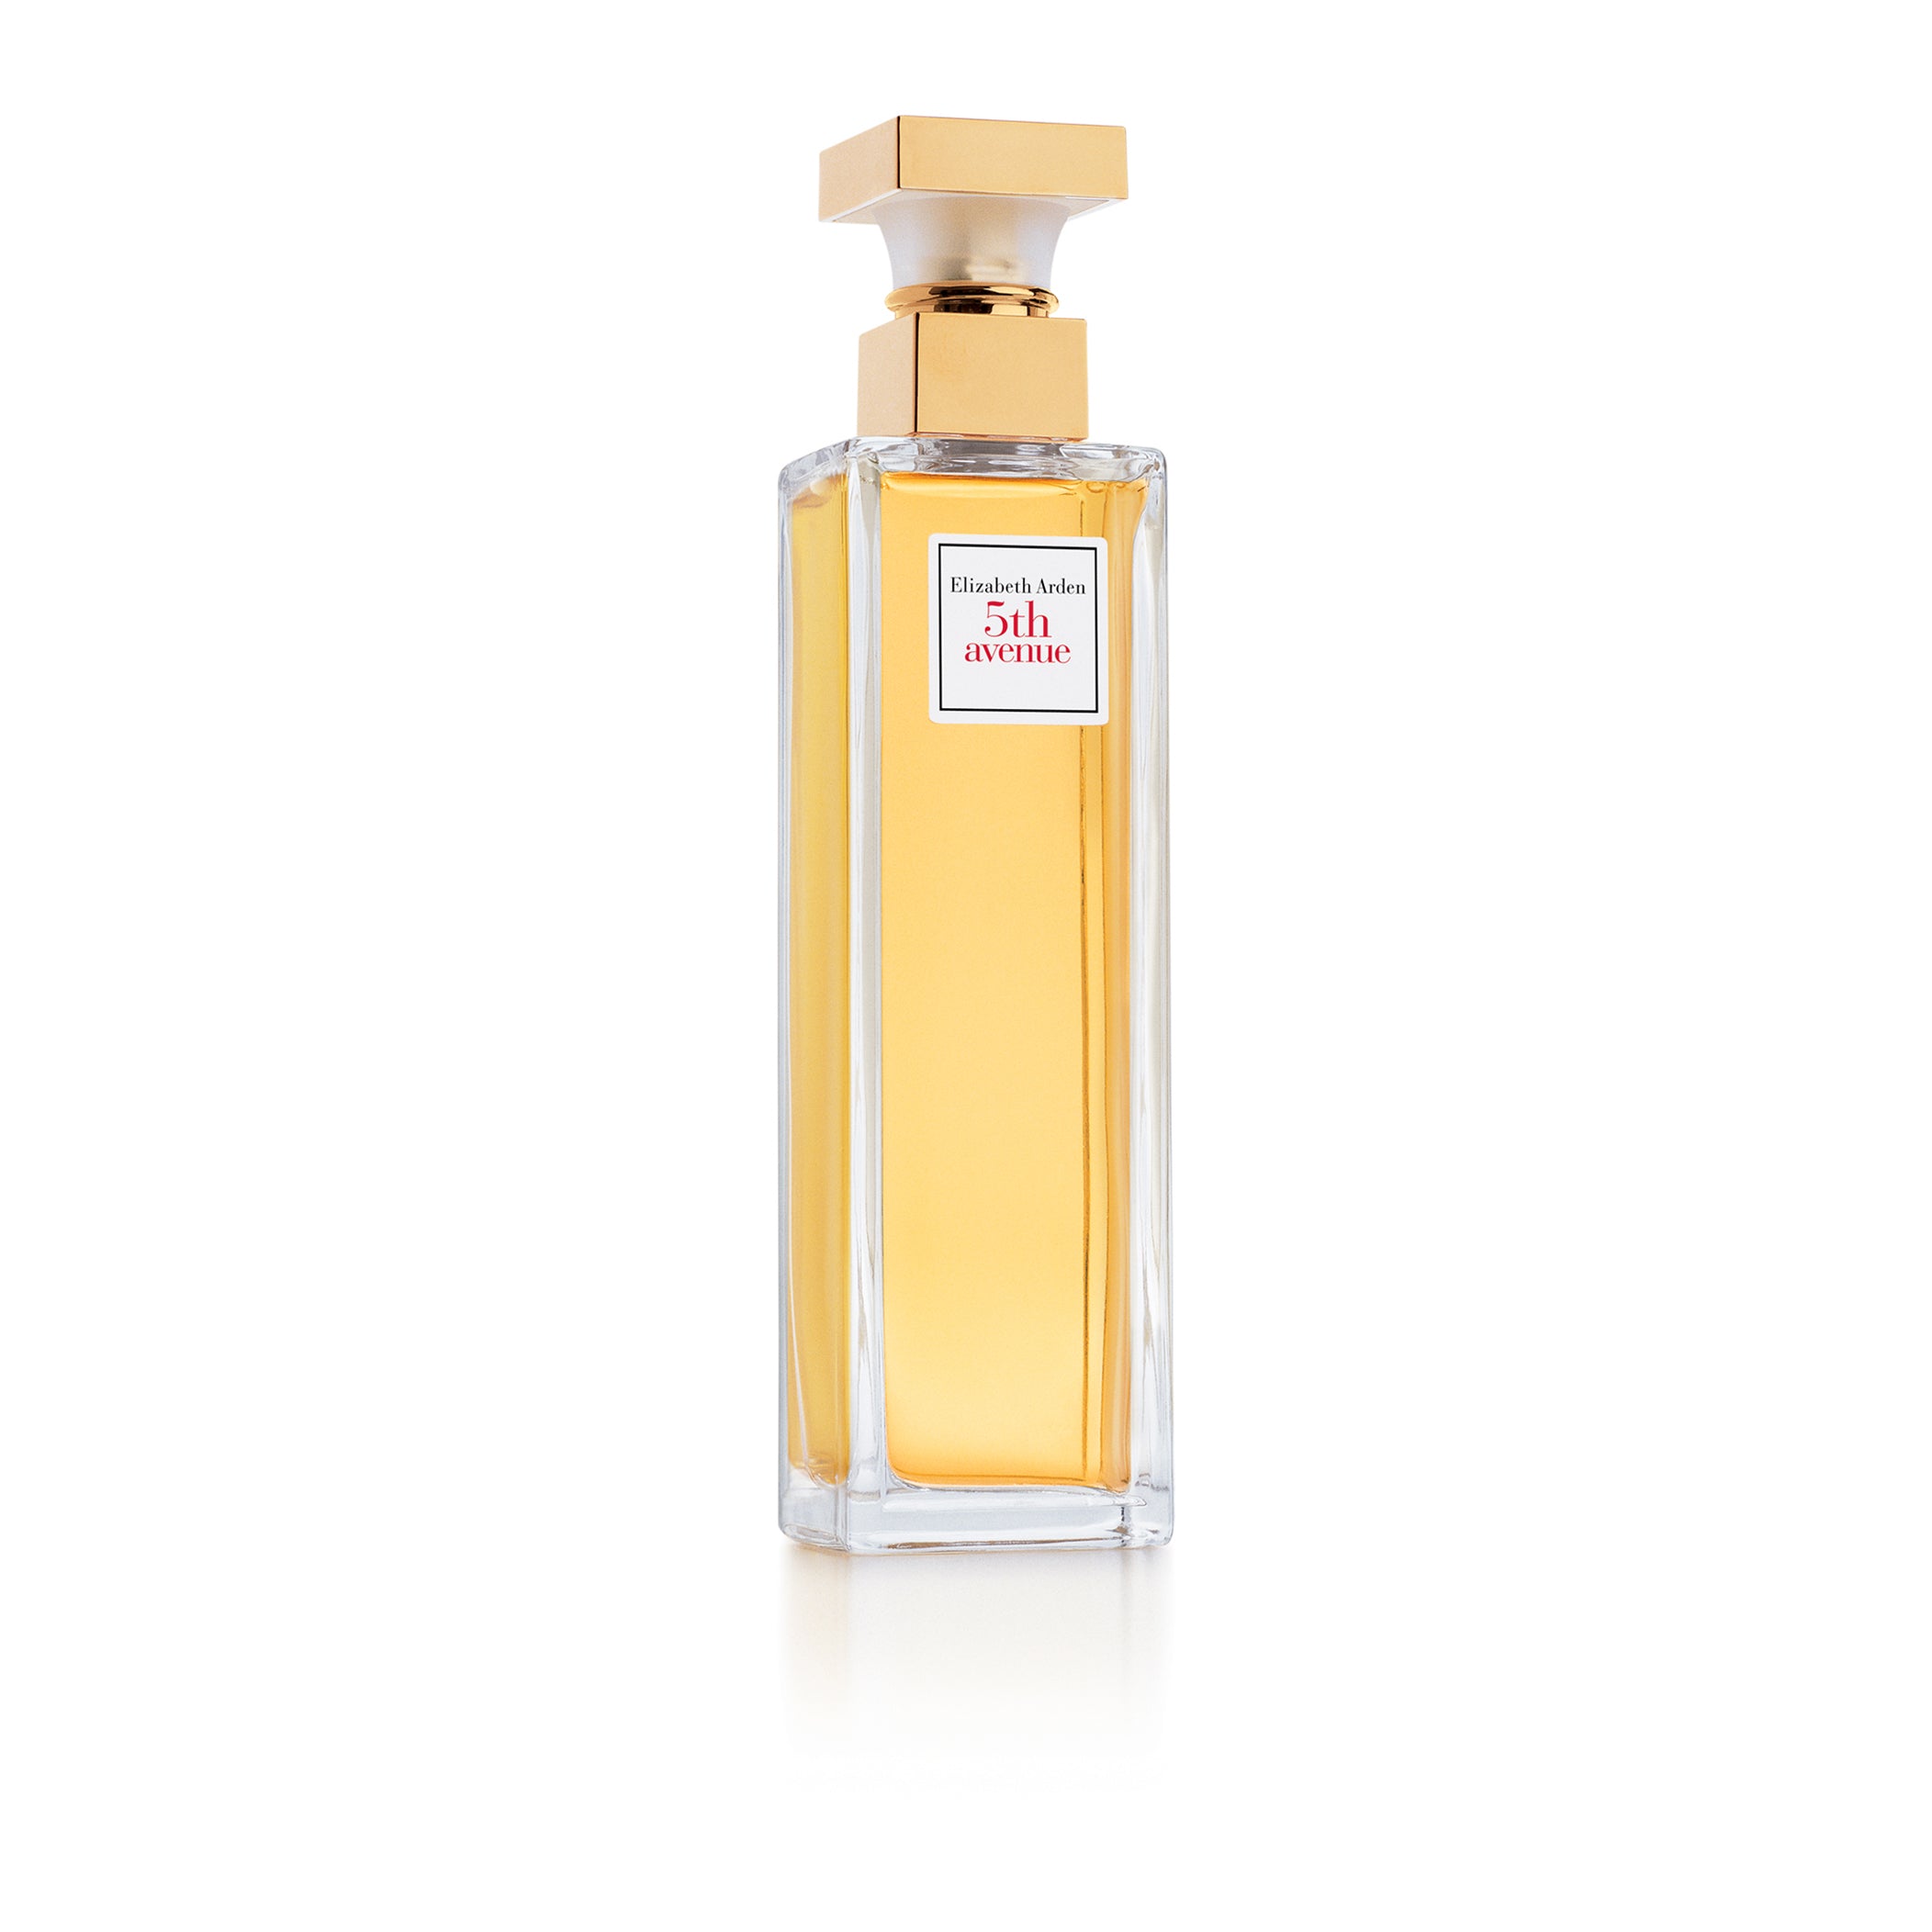 Eau de Parfum 5th AVENUE by Elizabeth Arden, 4.2 oz - 125ml spray, Unused  in Box